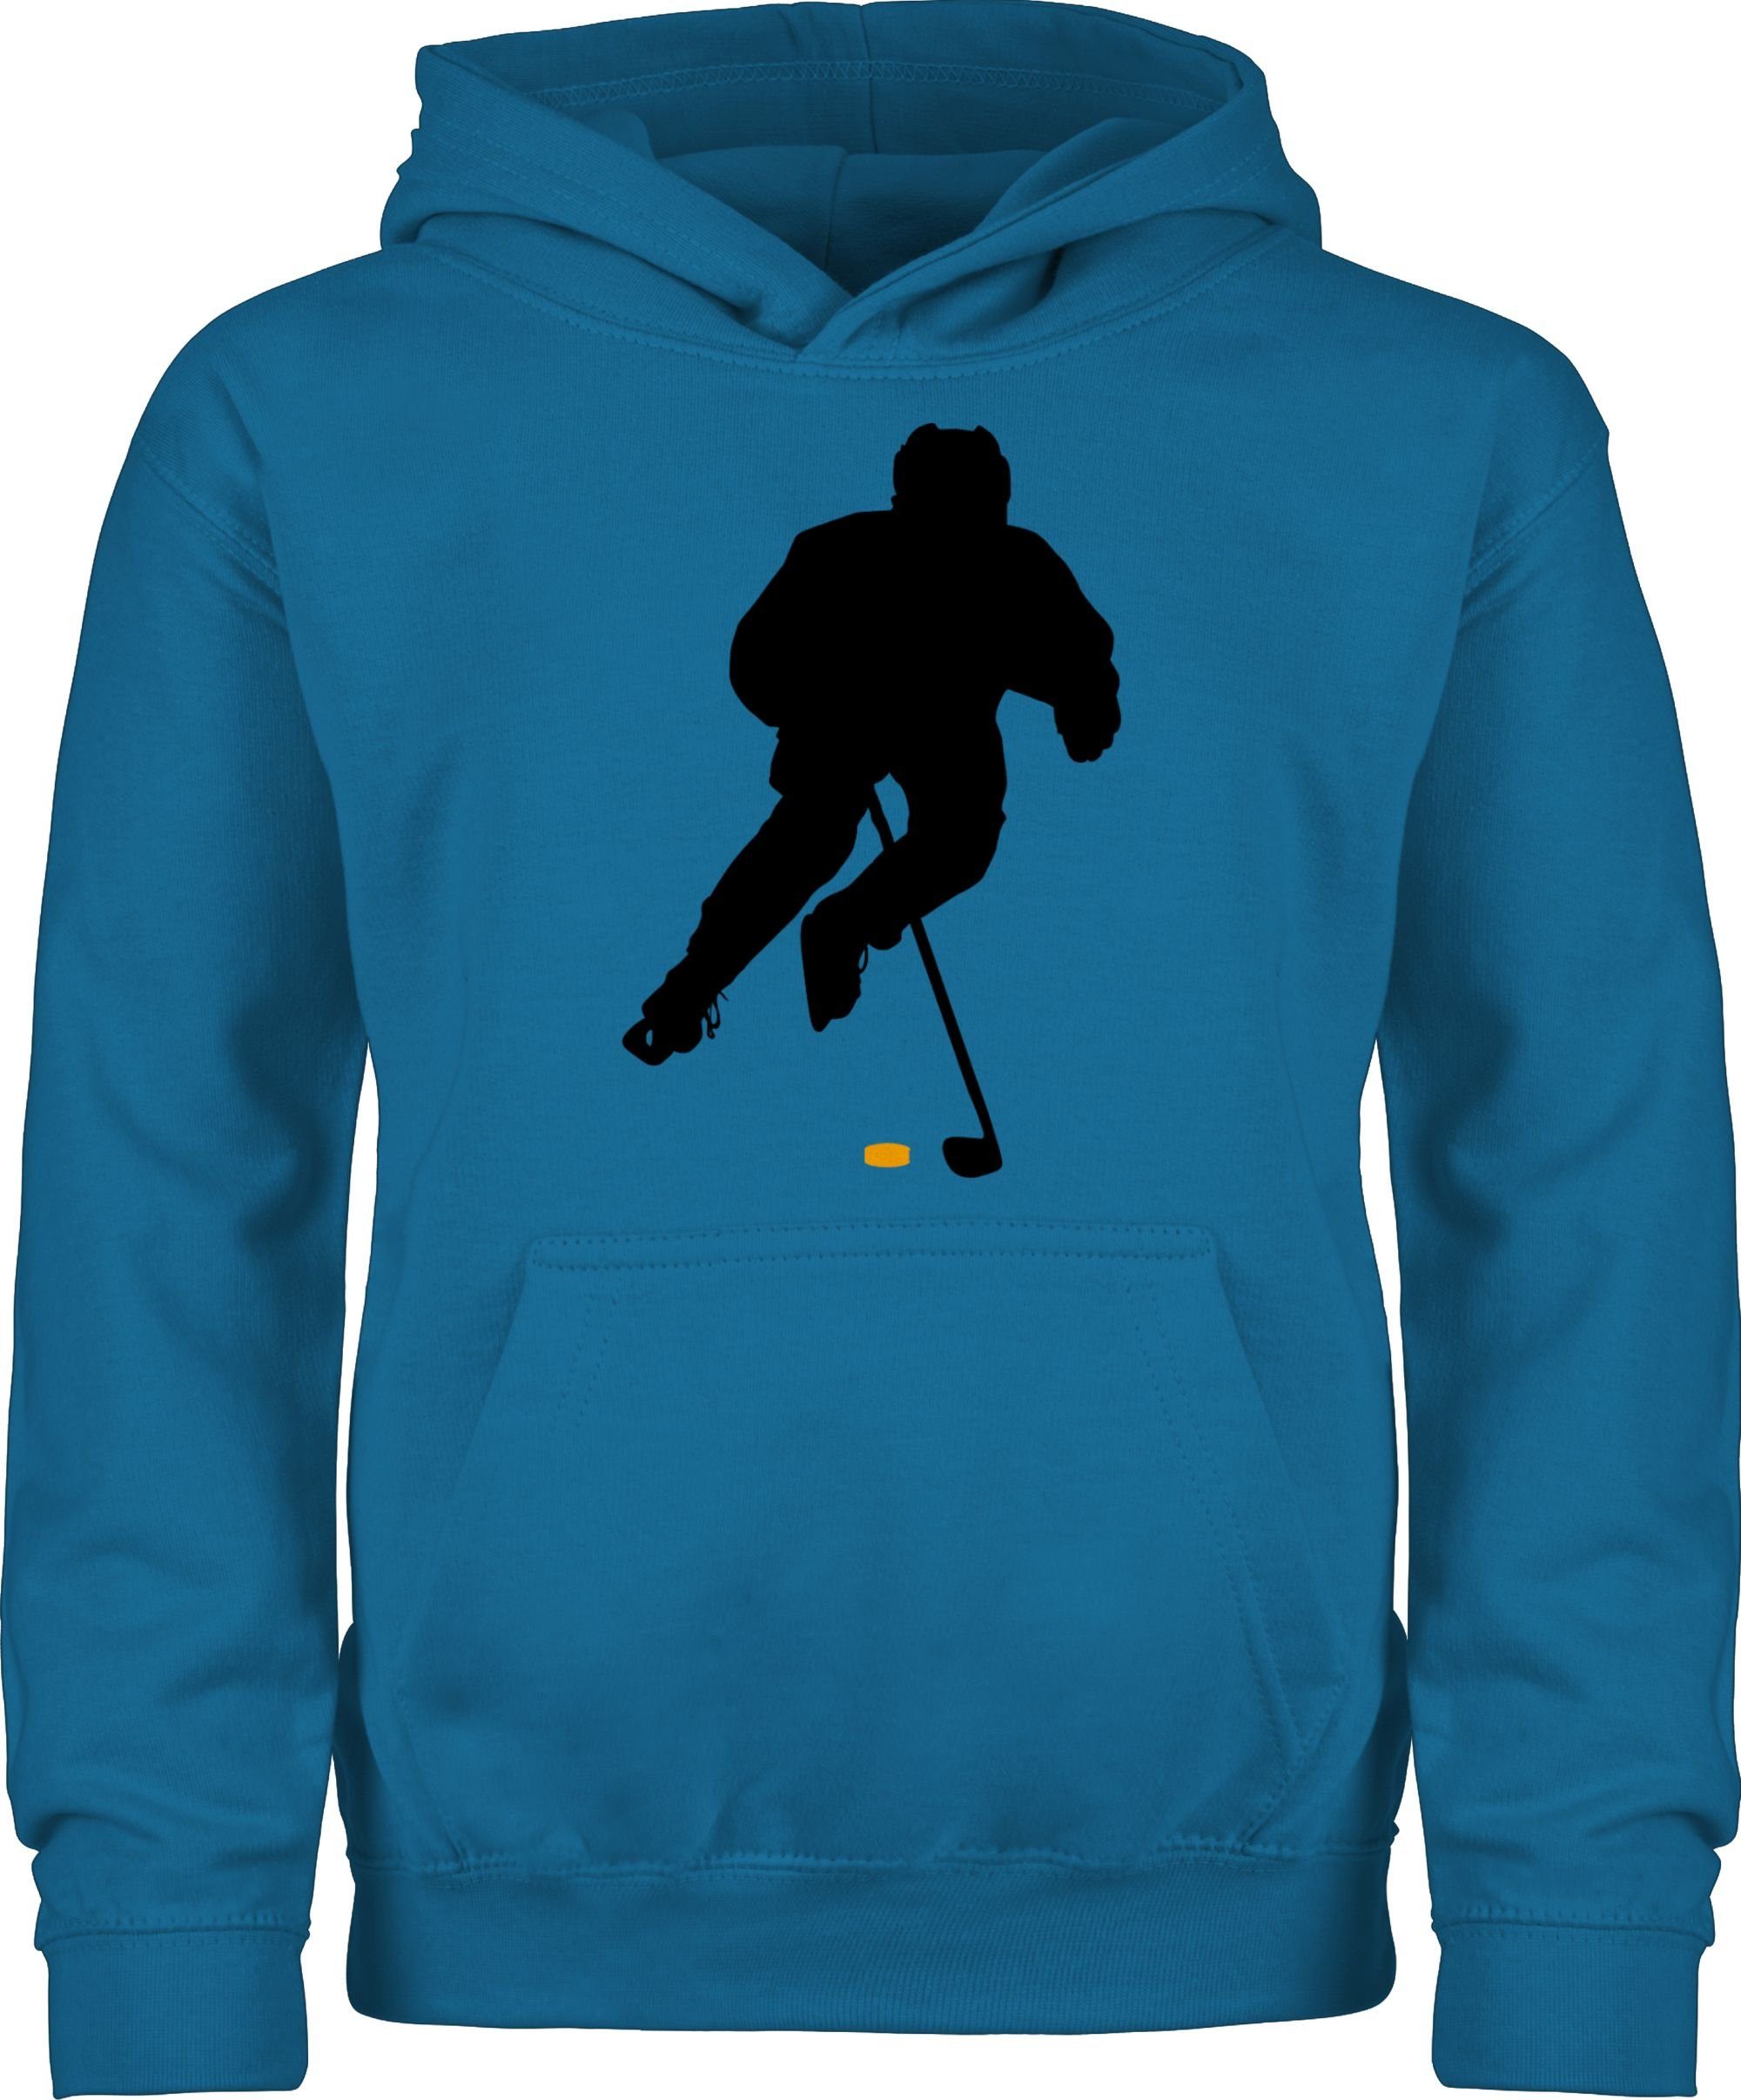 Shirtracer Hoodie Eishockey Spieler Kinder Sport Kleidung